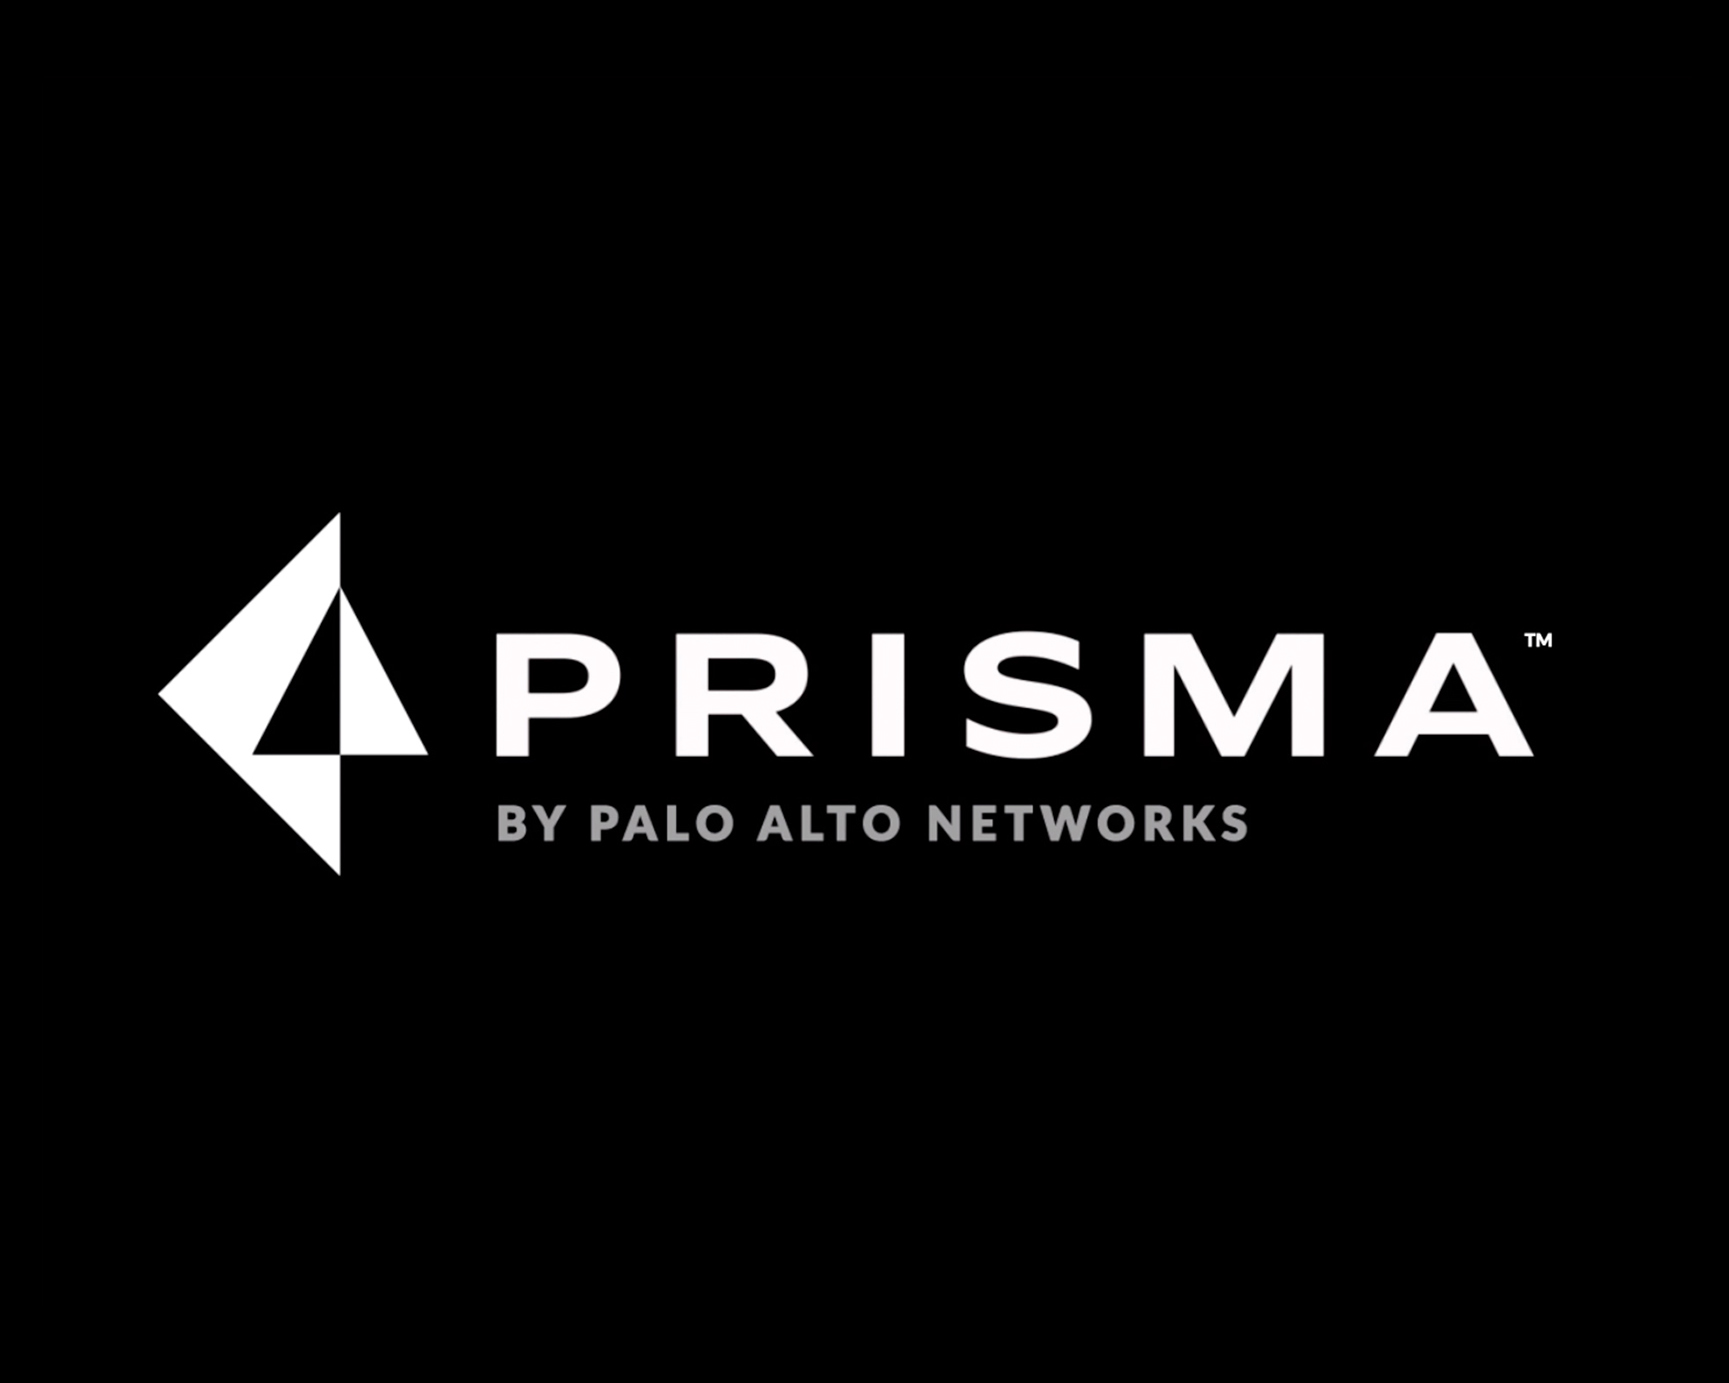 Palo Alto Networks - Prisma Launch Campaign